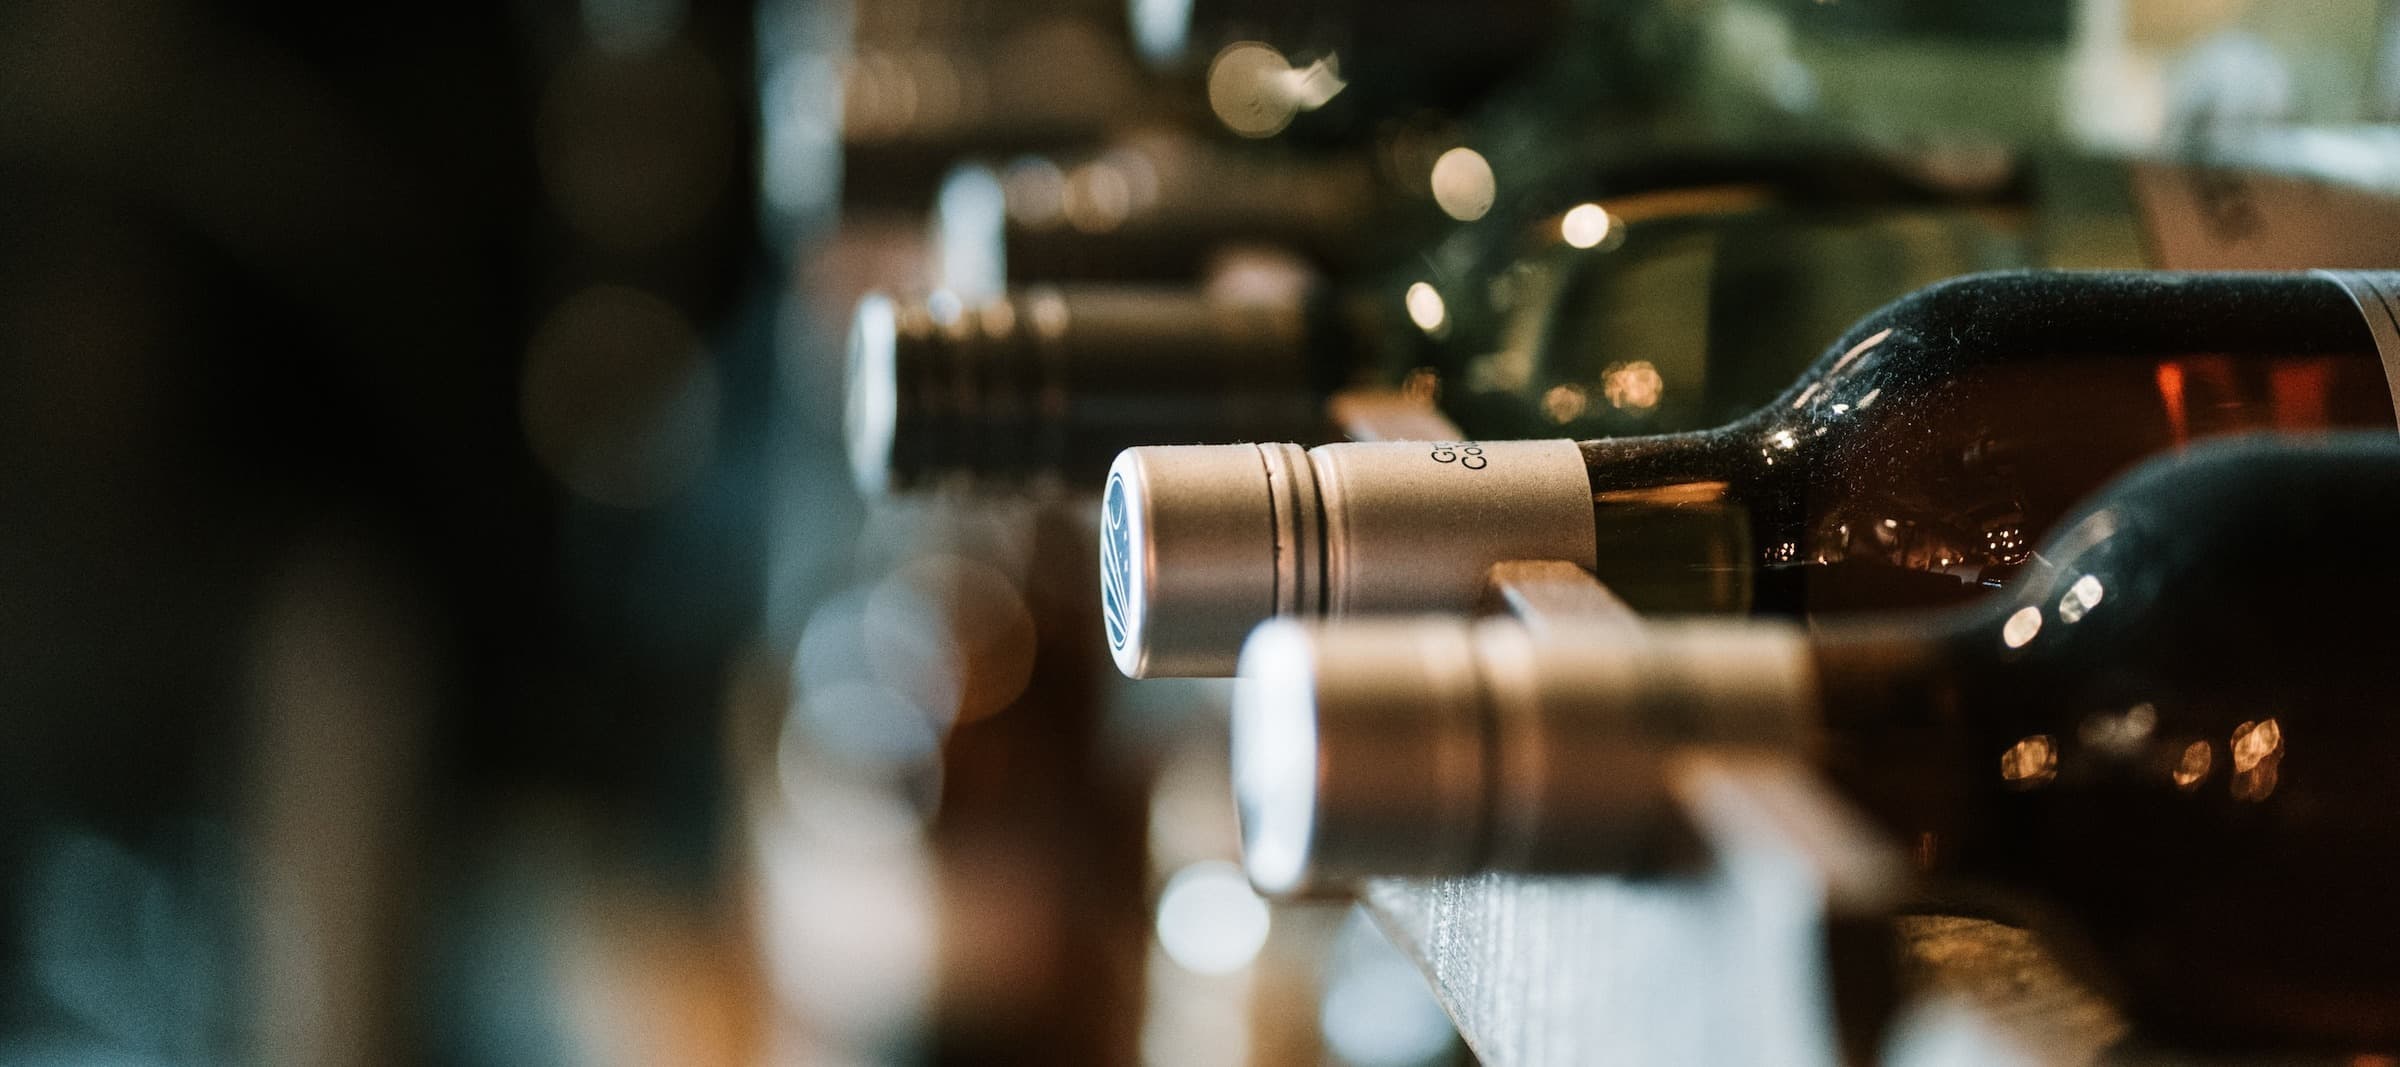 Фото новости: "Виноделы в Европе подготовились к размещению на бутылках QR-кодов о составе вина"